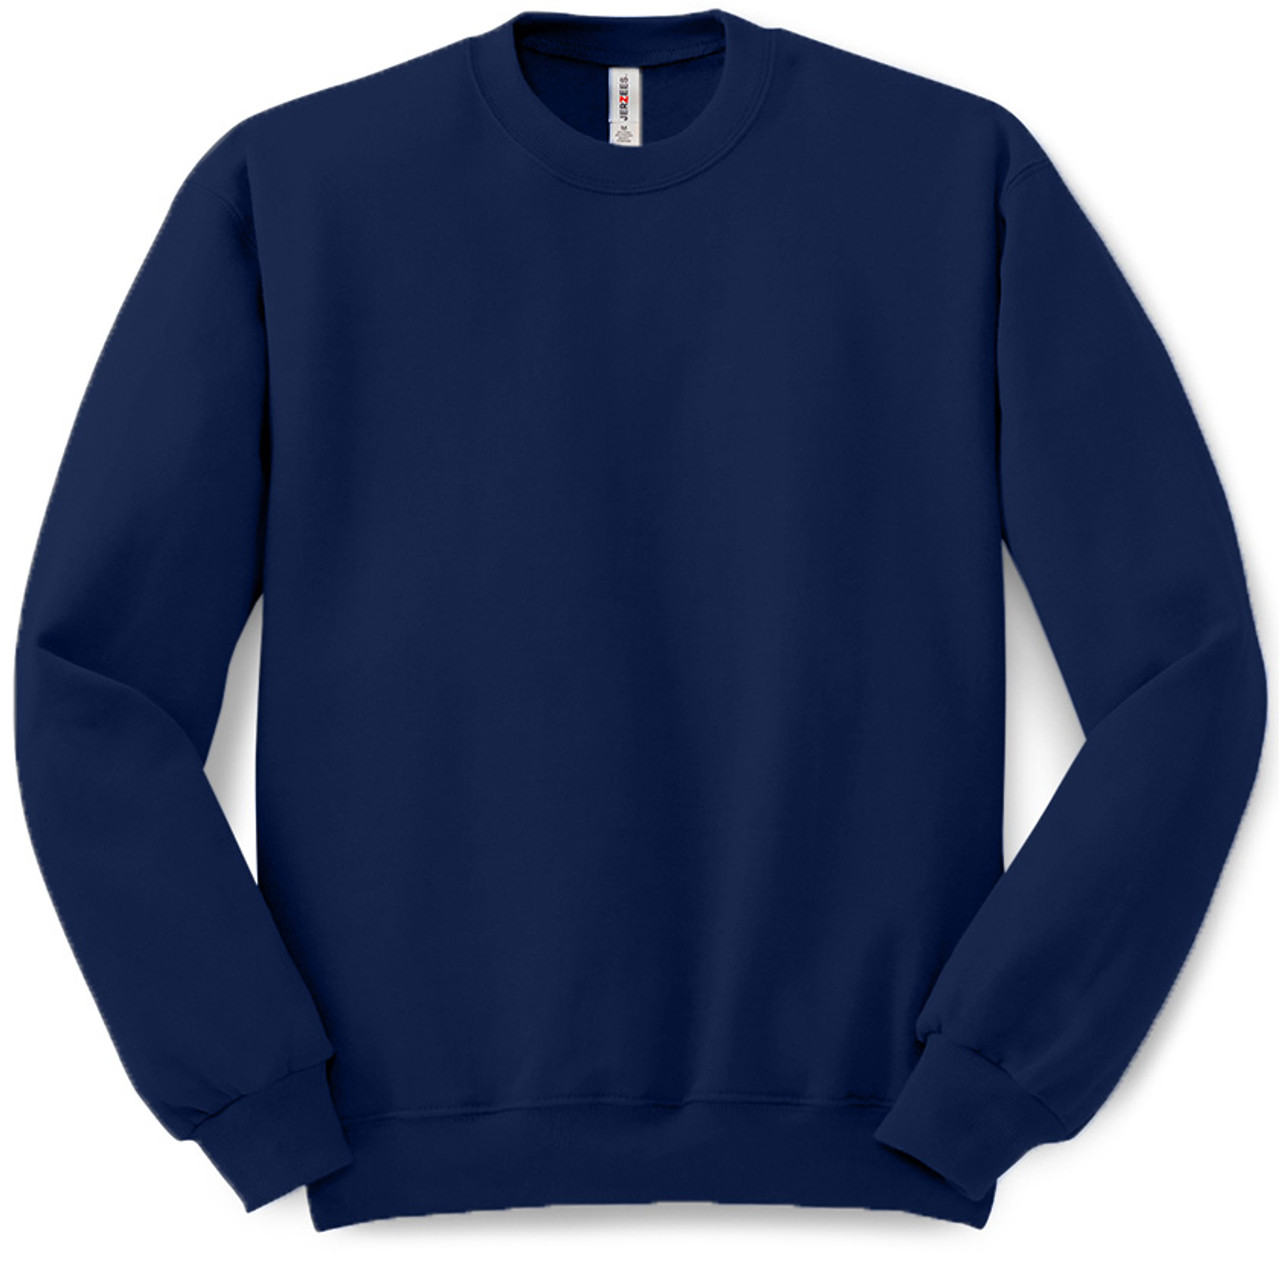 Plain Pullover Crew Neck Sweatshirt (Navy) - B-WEAR SPORTSWEAR